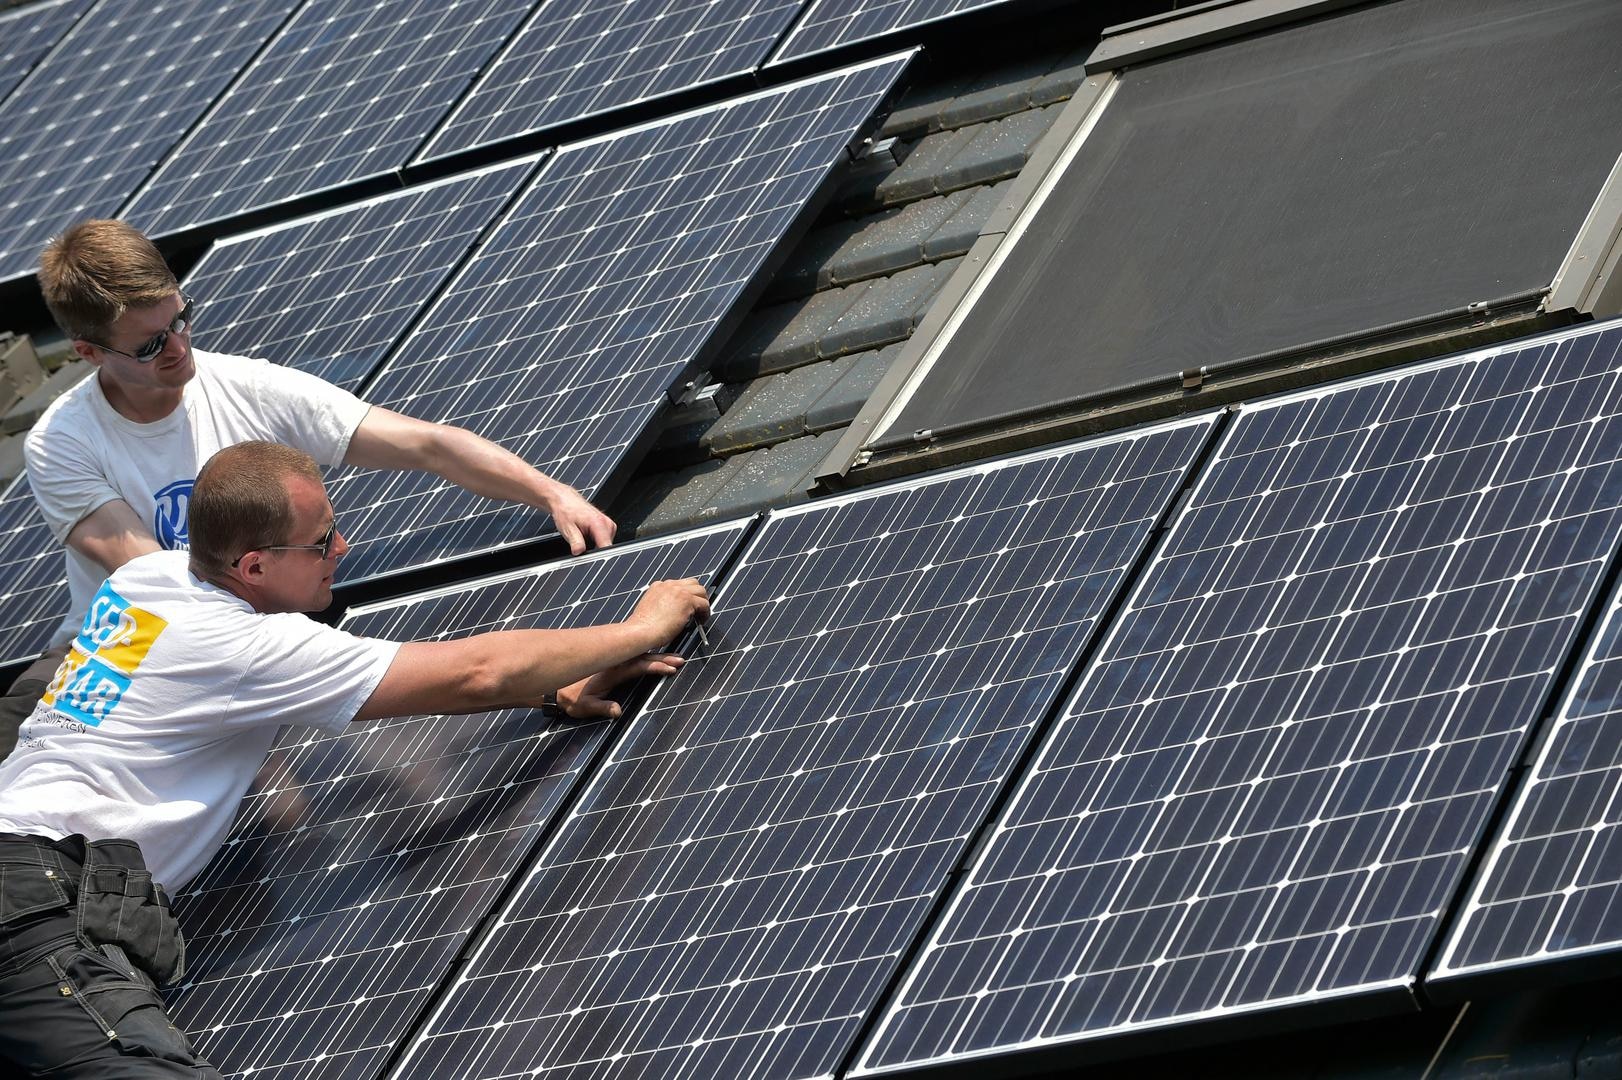 Groene lening in Brussel ook voor zonnepanelen